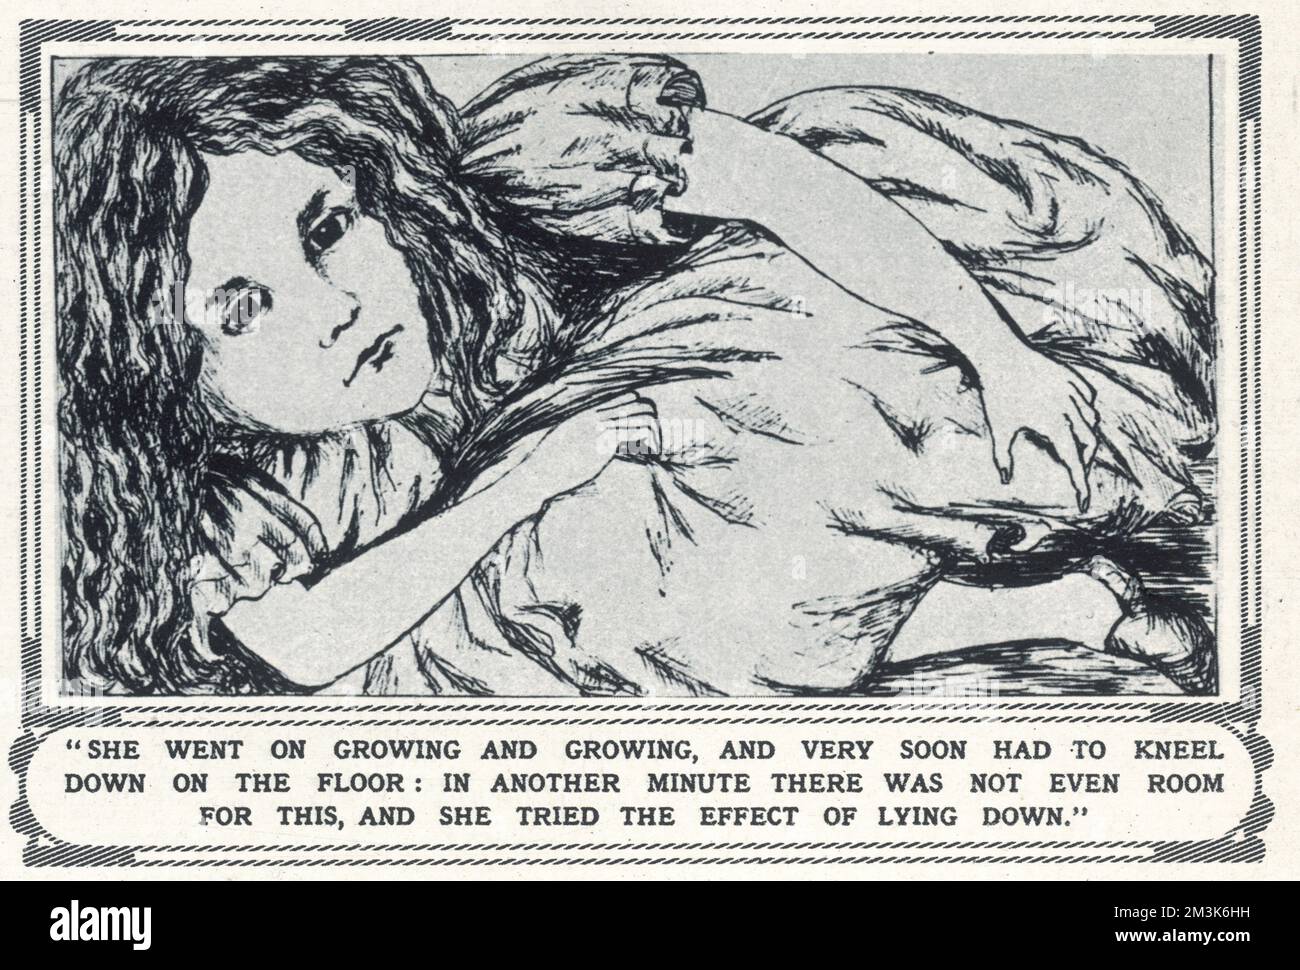 Illustration tirée du manuscrit original de 'Lewis Carroll' (rév. C.L. Dodgson) « Alice in Wonderland », montrant « Alice » s'est maudiée à mesure qu'elle grandit et grandit. Les dessins du rév. Dodgson (y compris celui-ci) ont été étroitement copiés par Sir John Tenniel pour ses illustrations à la première édition de 'Alice au pays des Merveilles'. Date: 1862 Banque D'Images